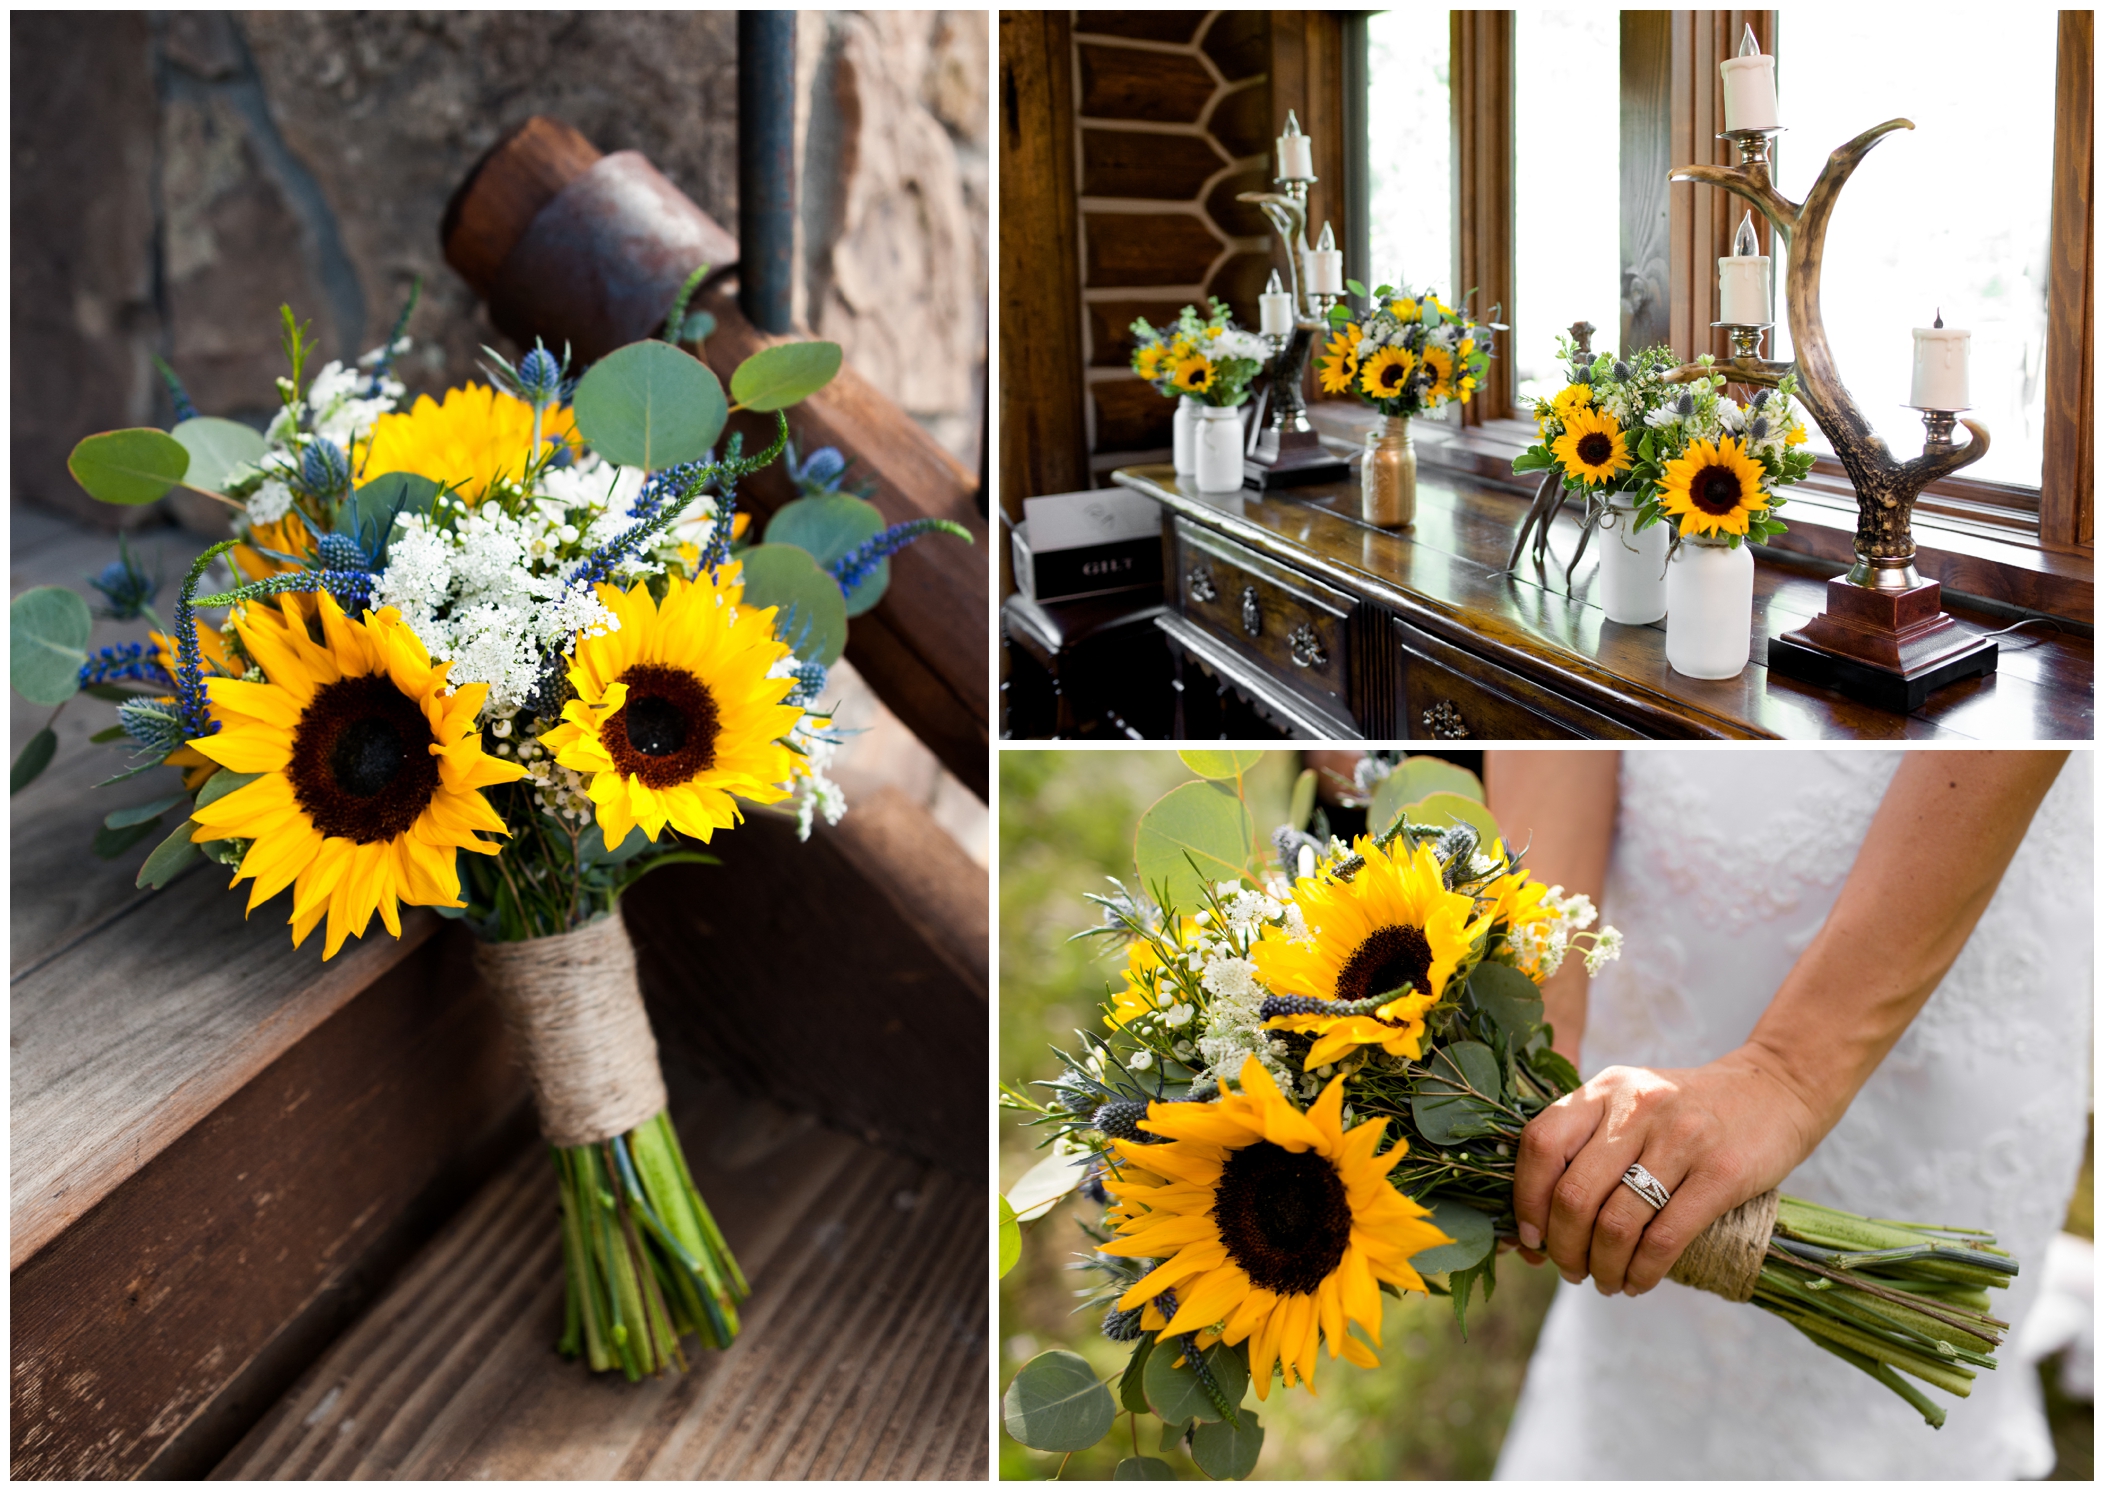 sunflower wedding bouquet 